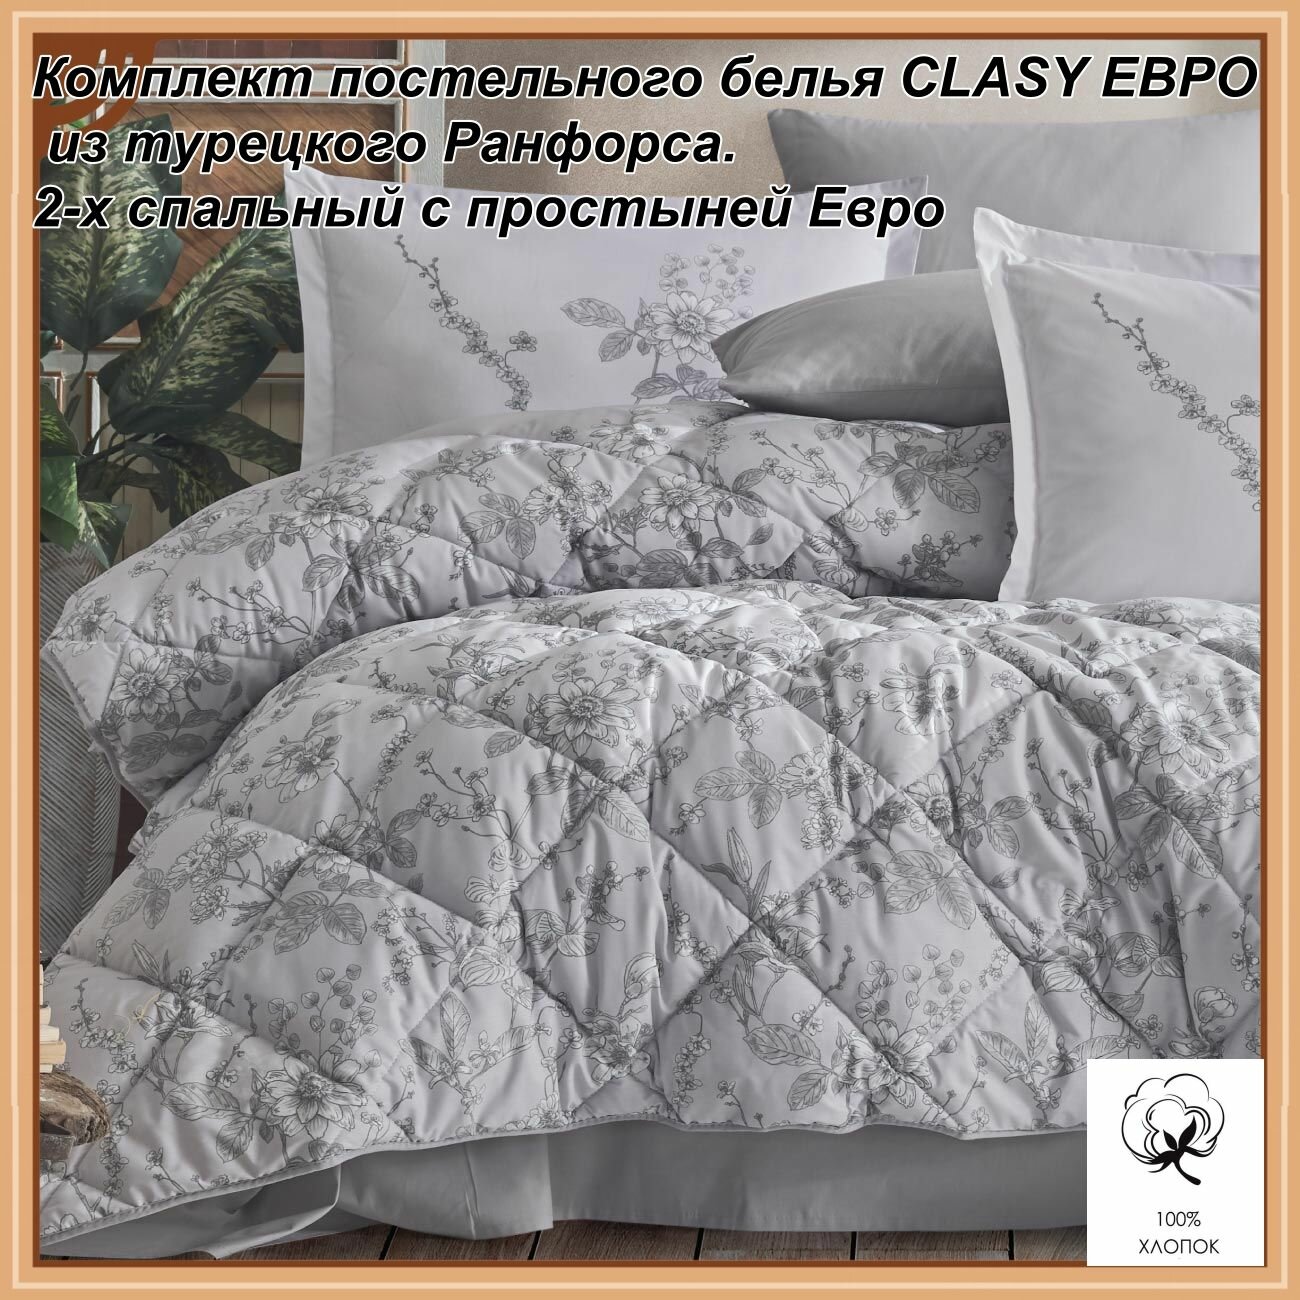 Комплект постельного белья CLASY евро из турецкого ранфорса.